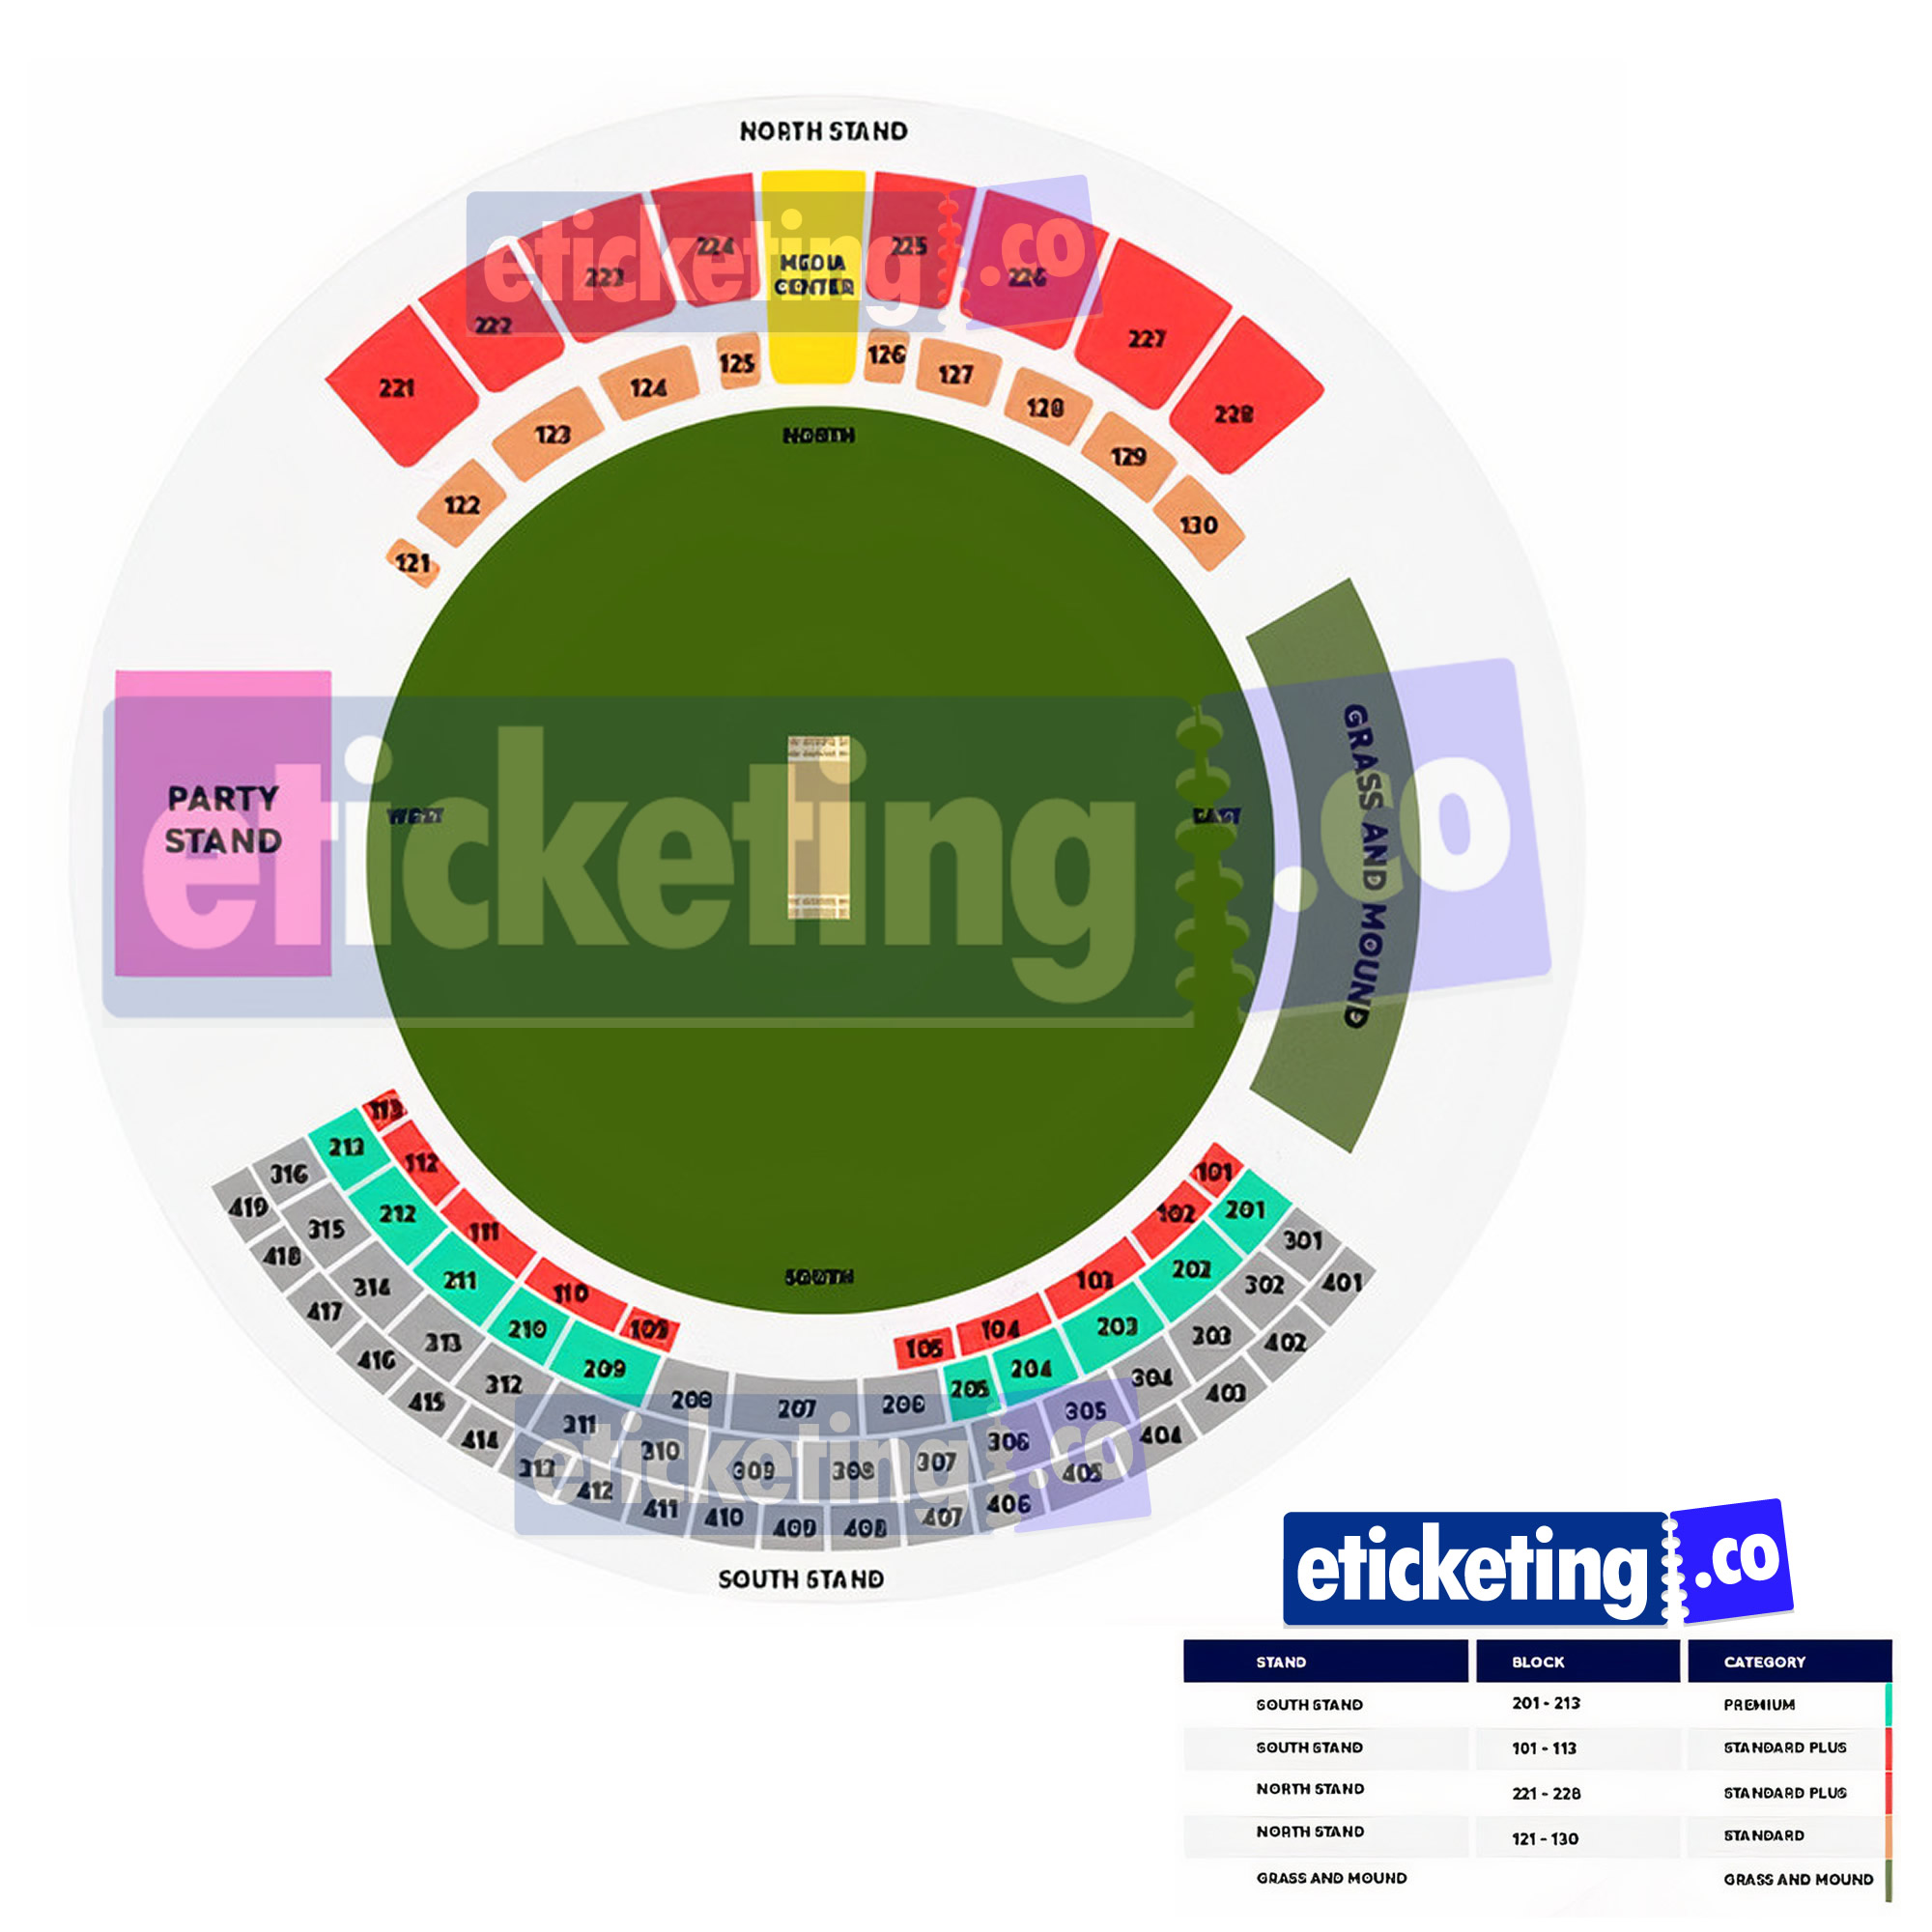 Sir Vivian Richards Stadium West Indies vs England 2nd ODI Venue Seating Plan